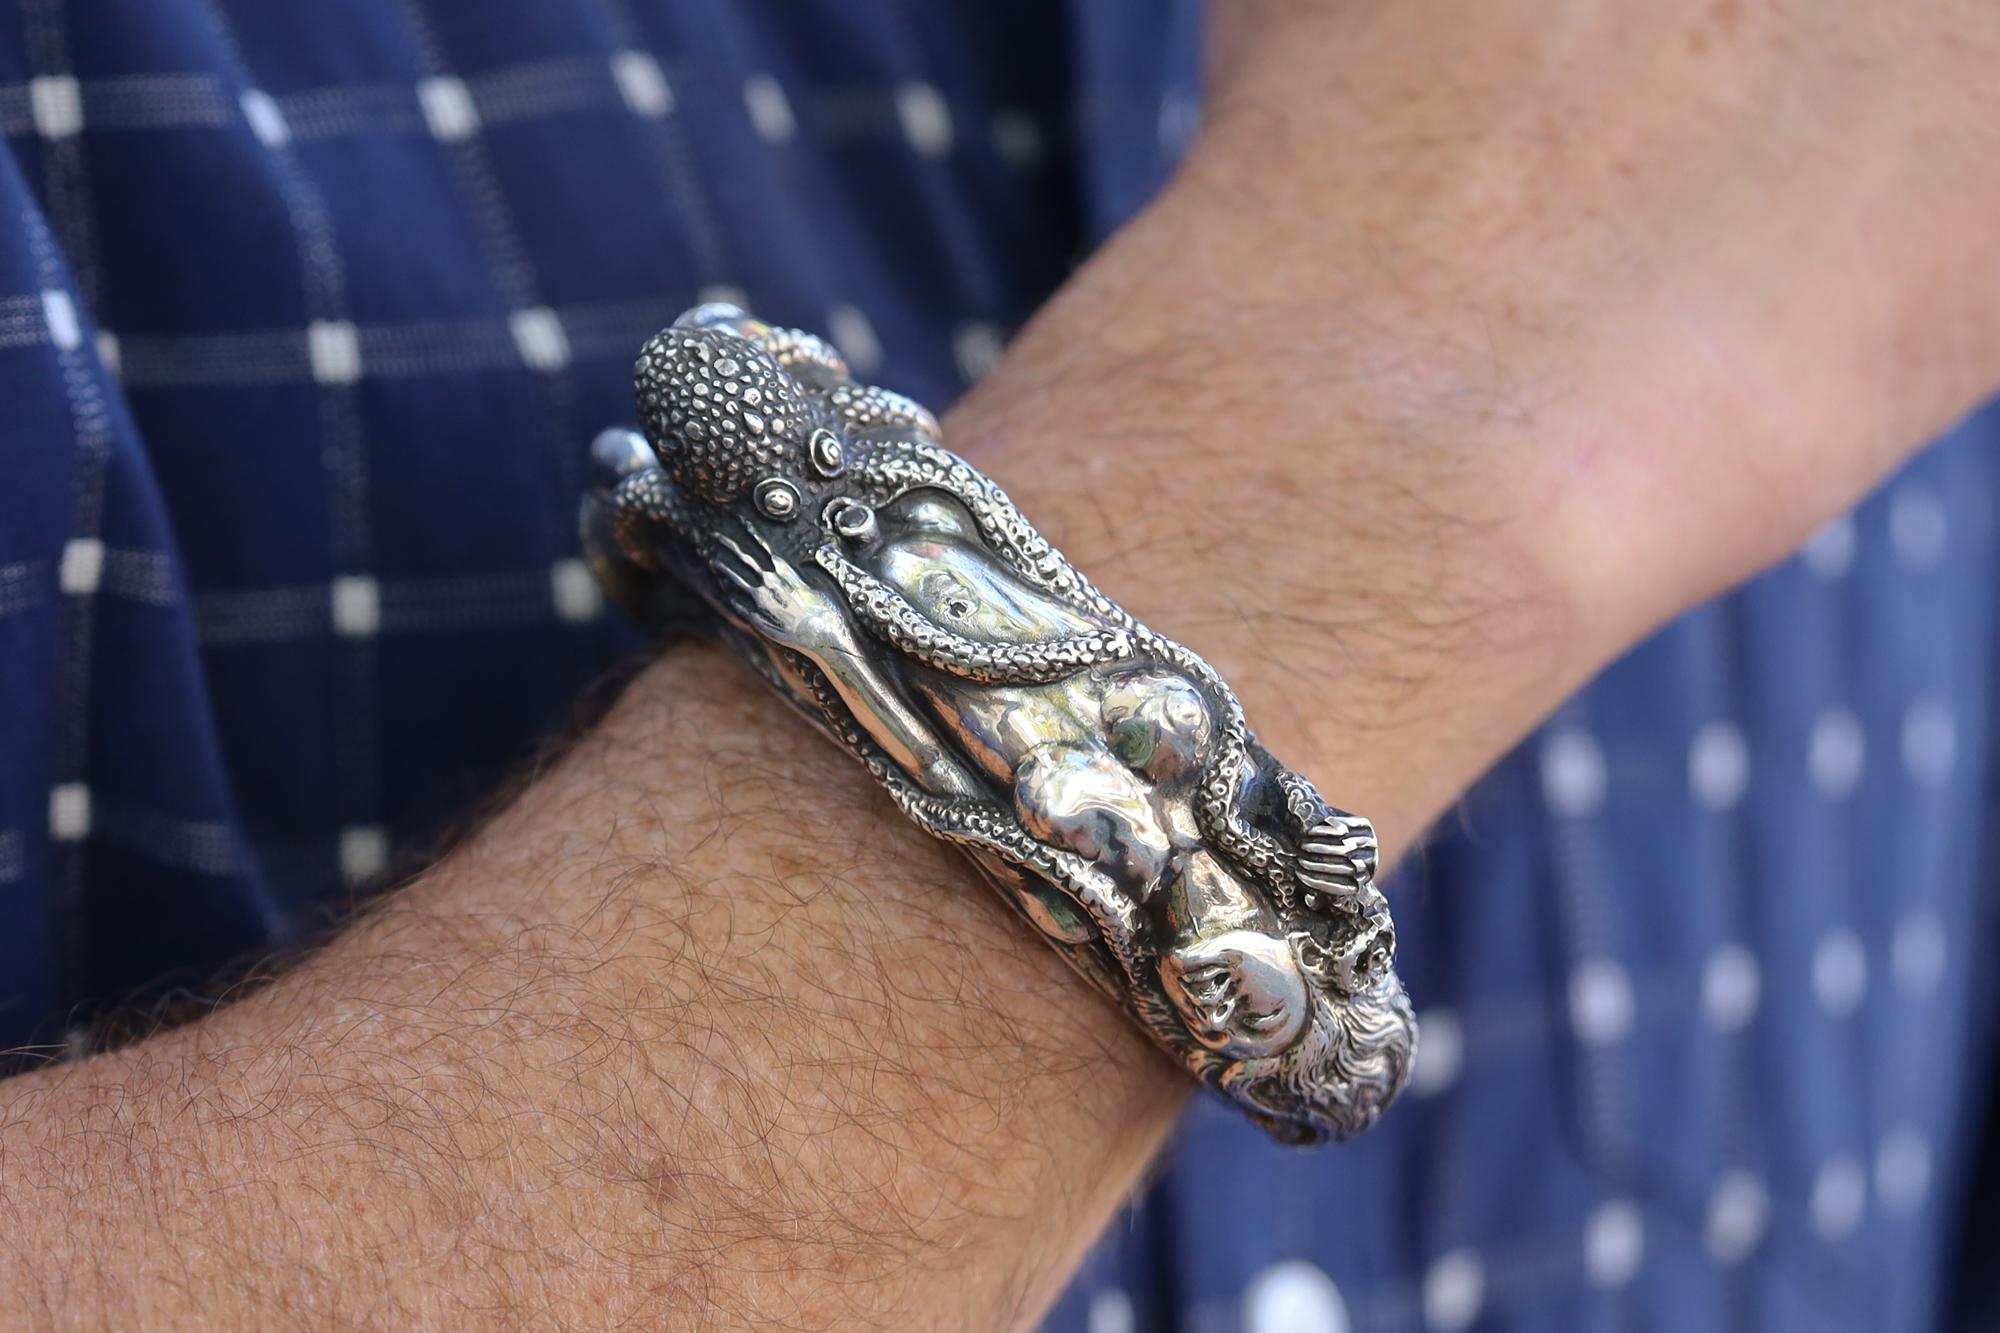 Le rêve de la femme du pêcheur Manchette, dimensionnée pour un poignet d'homme. Ce bracelet très intéressant s'inspire d'une estampe japonaise érotique ou shunga du début du XIXe siècle, réalisée par Hokusai. Un bracelet large et dynamique qui ne